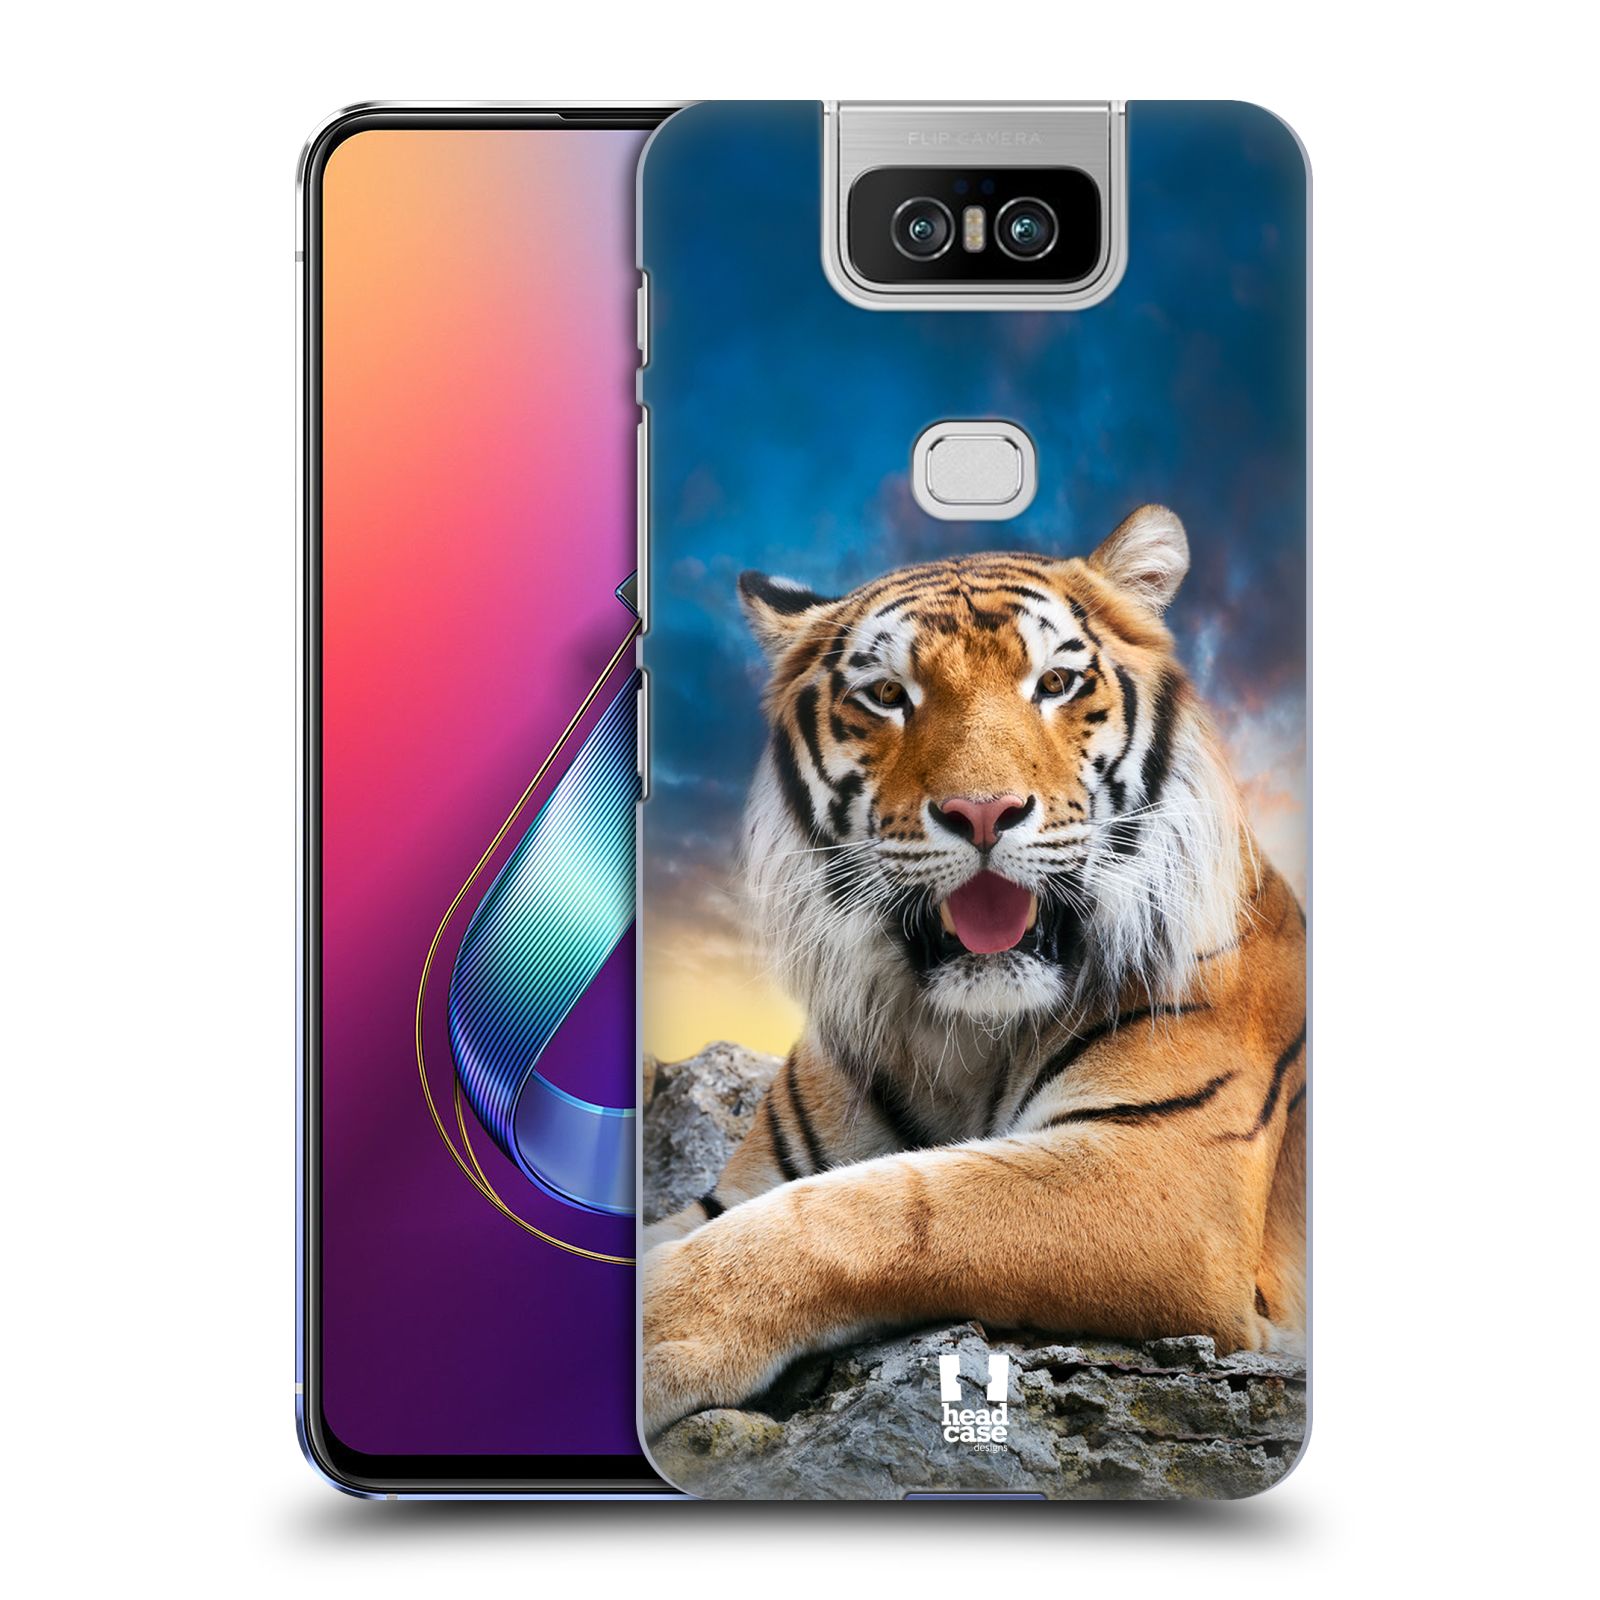  Pouzdro na mobil Asus Zenfone 6 ZS630KL - HEAD CASE - vzor Divočina, Divoký život a zvířata foto TYGR A NEBE